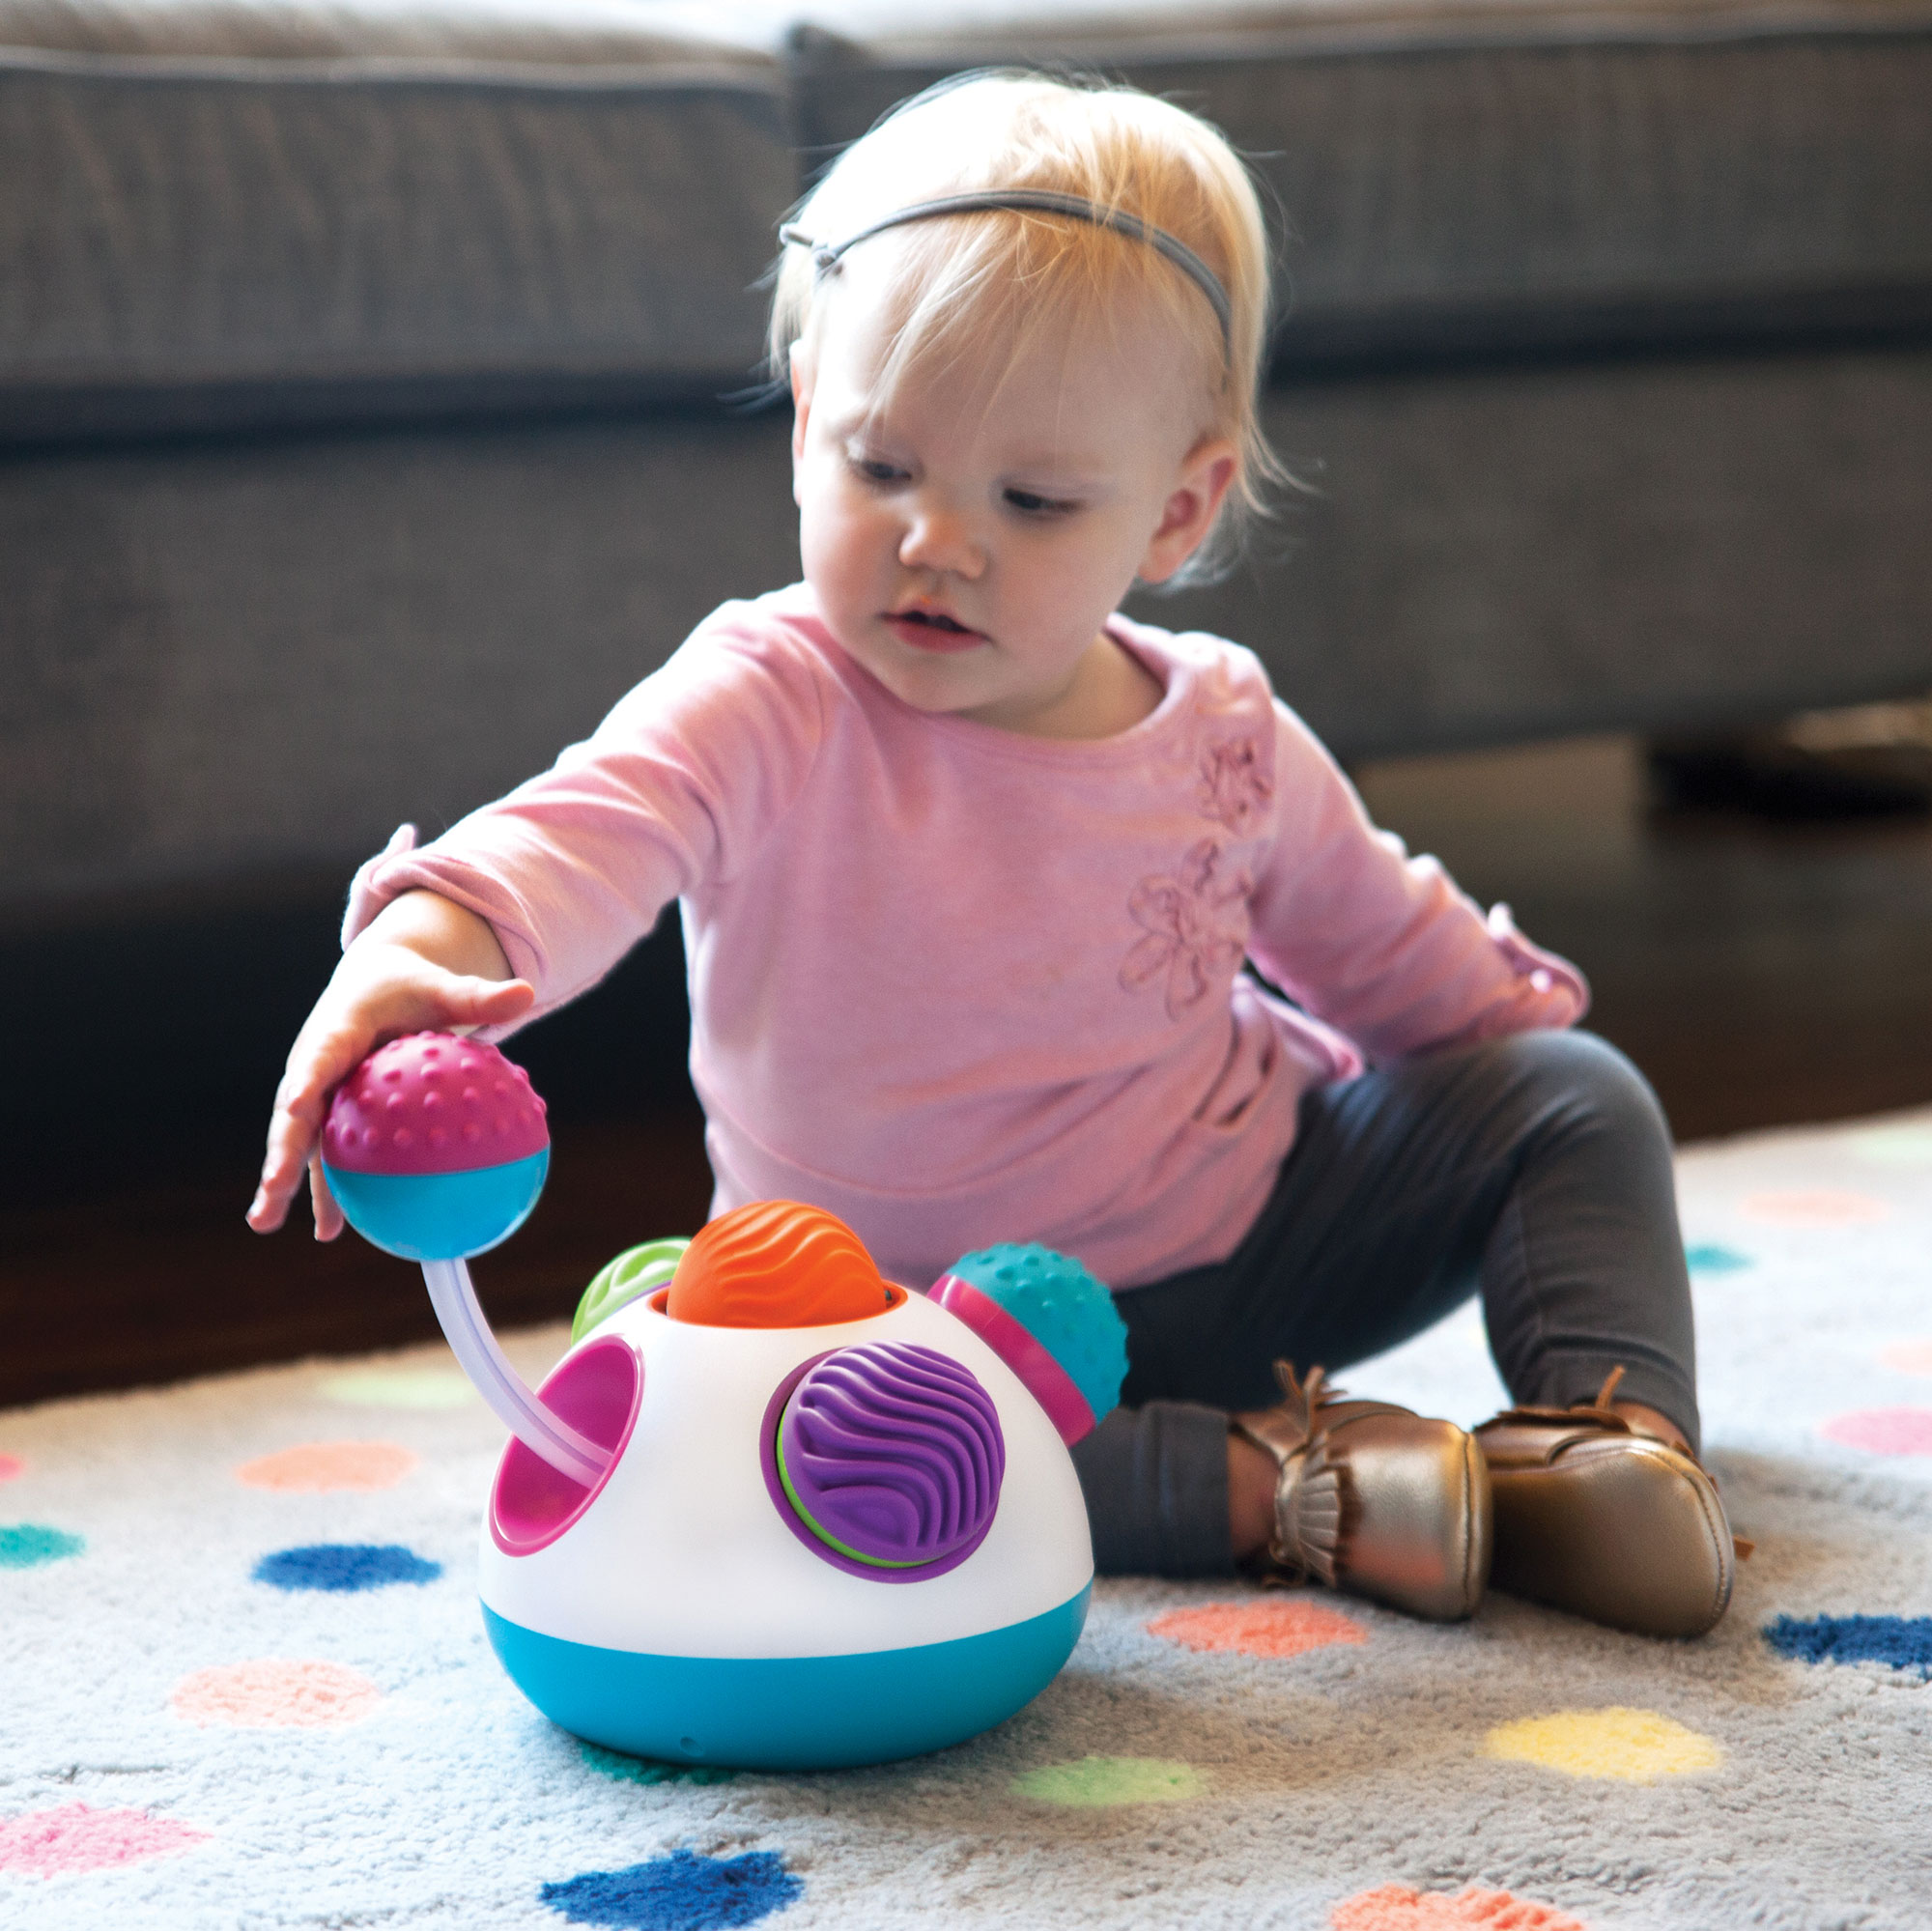 Klickity Juguete sensorial para bebés